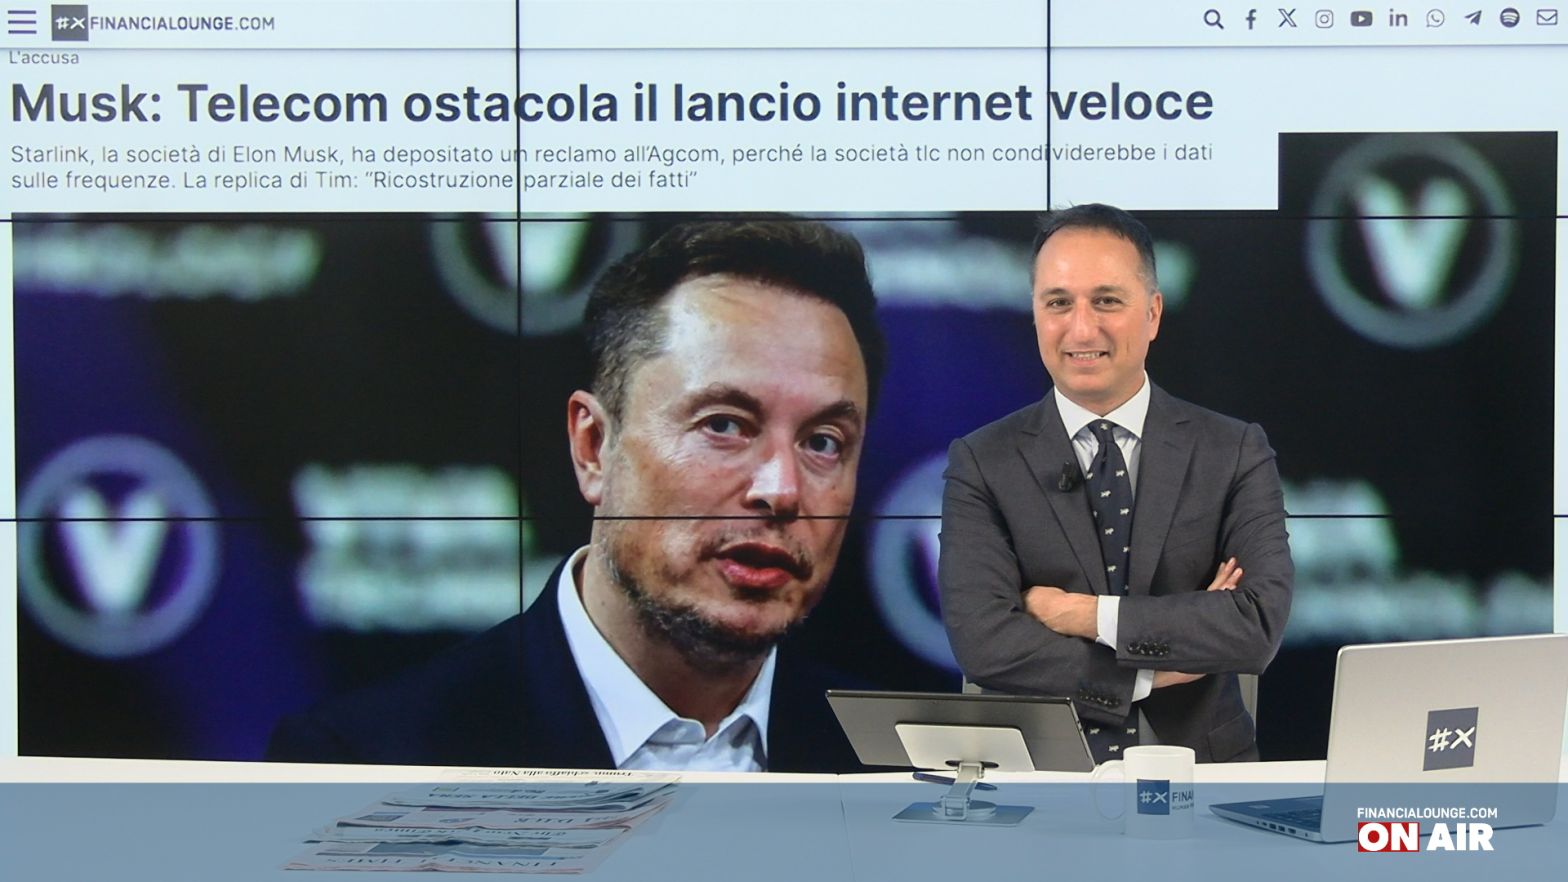 financialounge.com Musk contro Telecom Italia, volano petrolio e oro - Edizione del 2 aprile